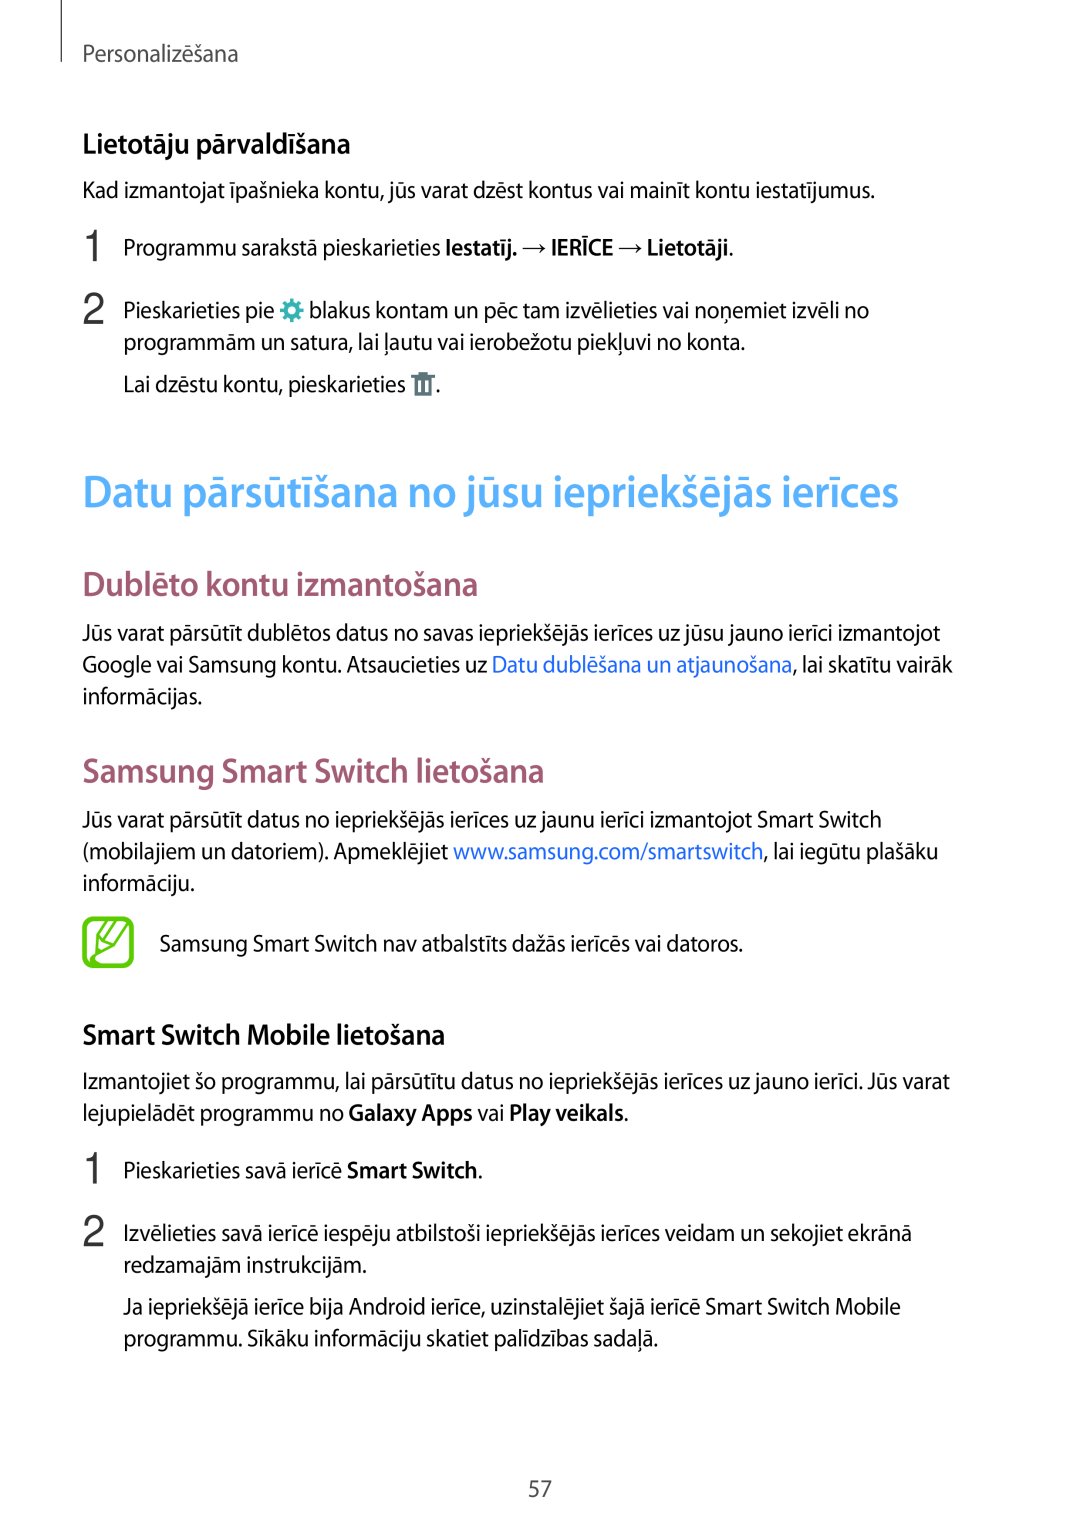 Samsung SM-T800NTSASEB Datu pārsūtīšana no jūsu iepriekšējās ierīces, Dublēto kontu izmantošana, Lietotāju pārvaldīšana 